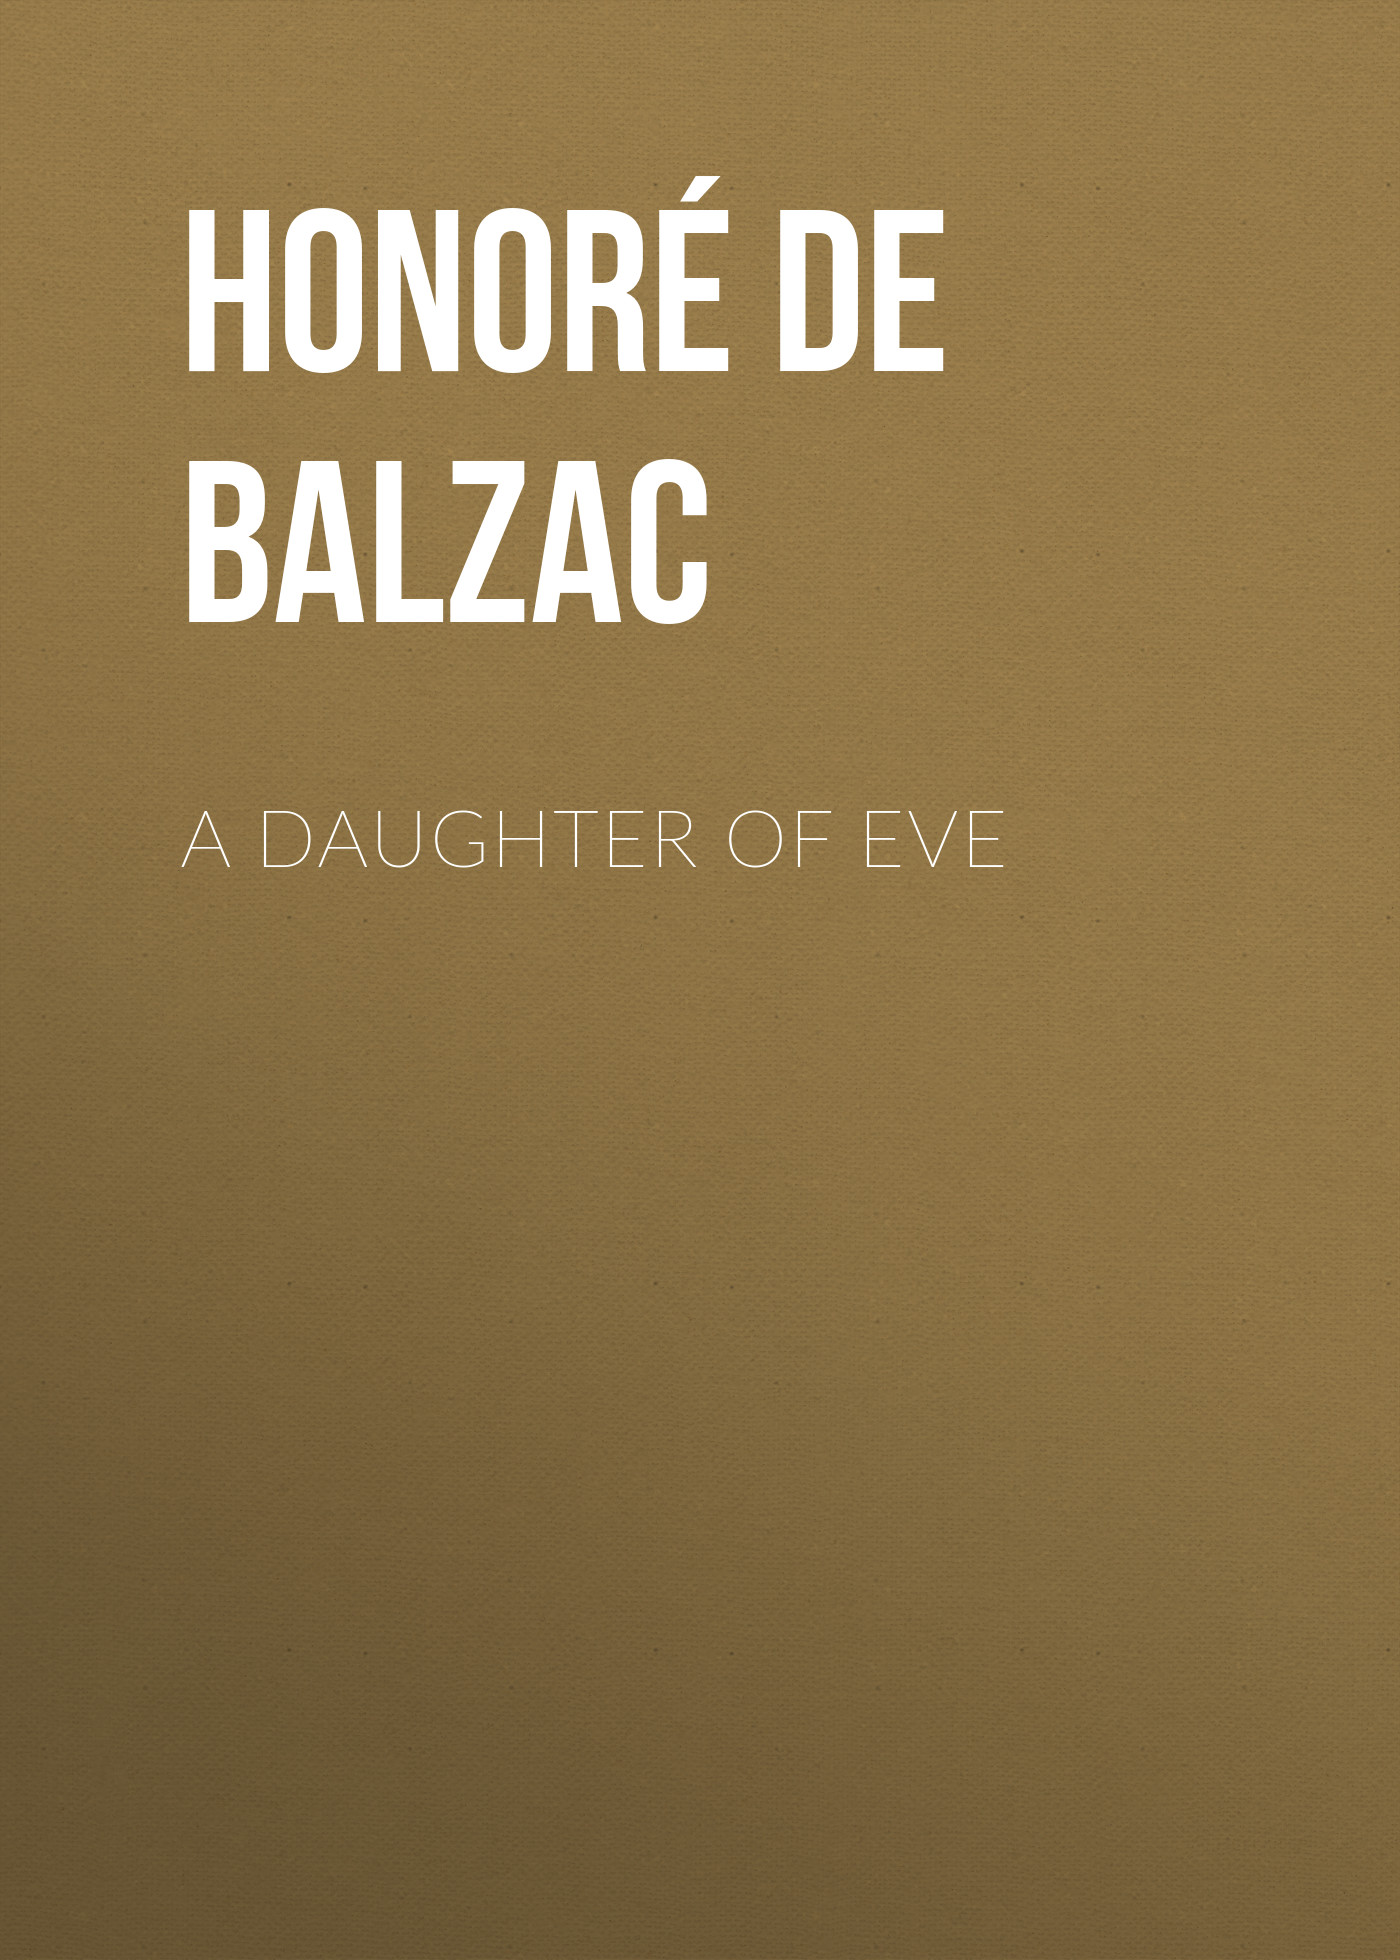 Книга A Daughter of Eve из серии , созданная Honoré Balzac, может относится к жанру Литература 19 века, Зарубежная старинная литература, Зарубежная классика. Стоимость электронной книги A Daughter of Eve с идентификатором 25020099 составляет 0 руб.